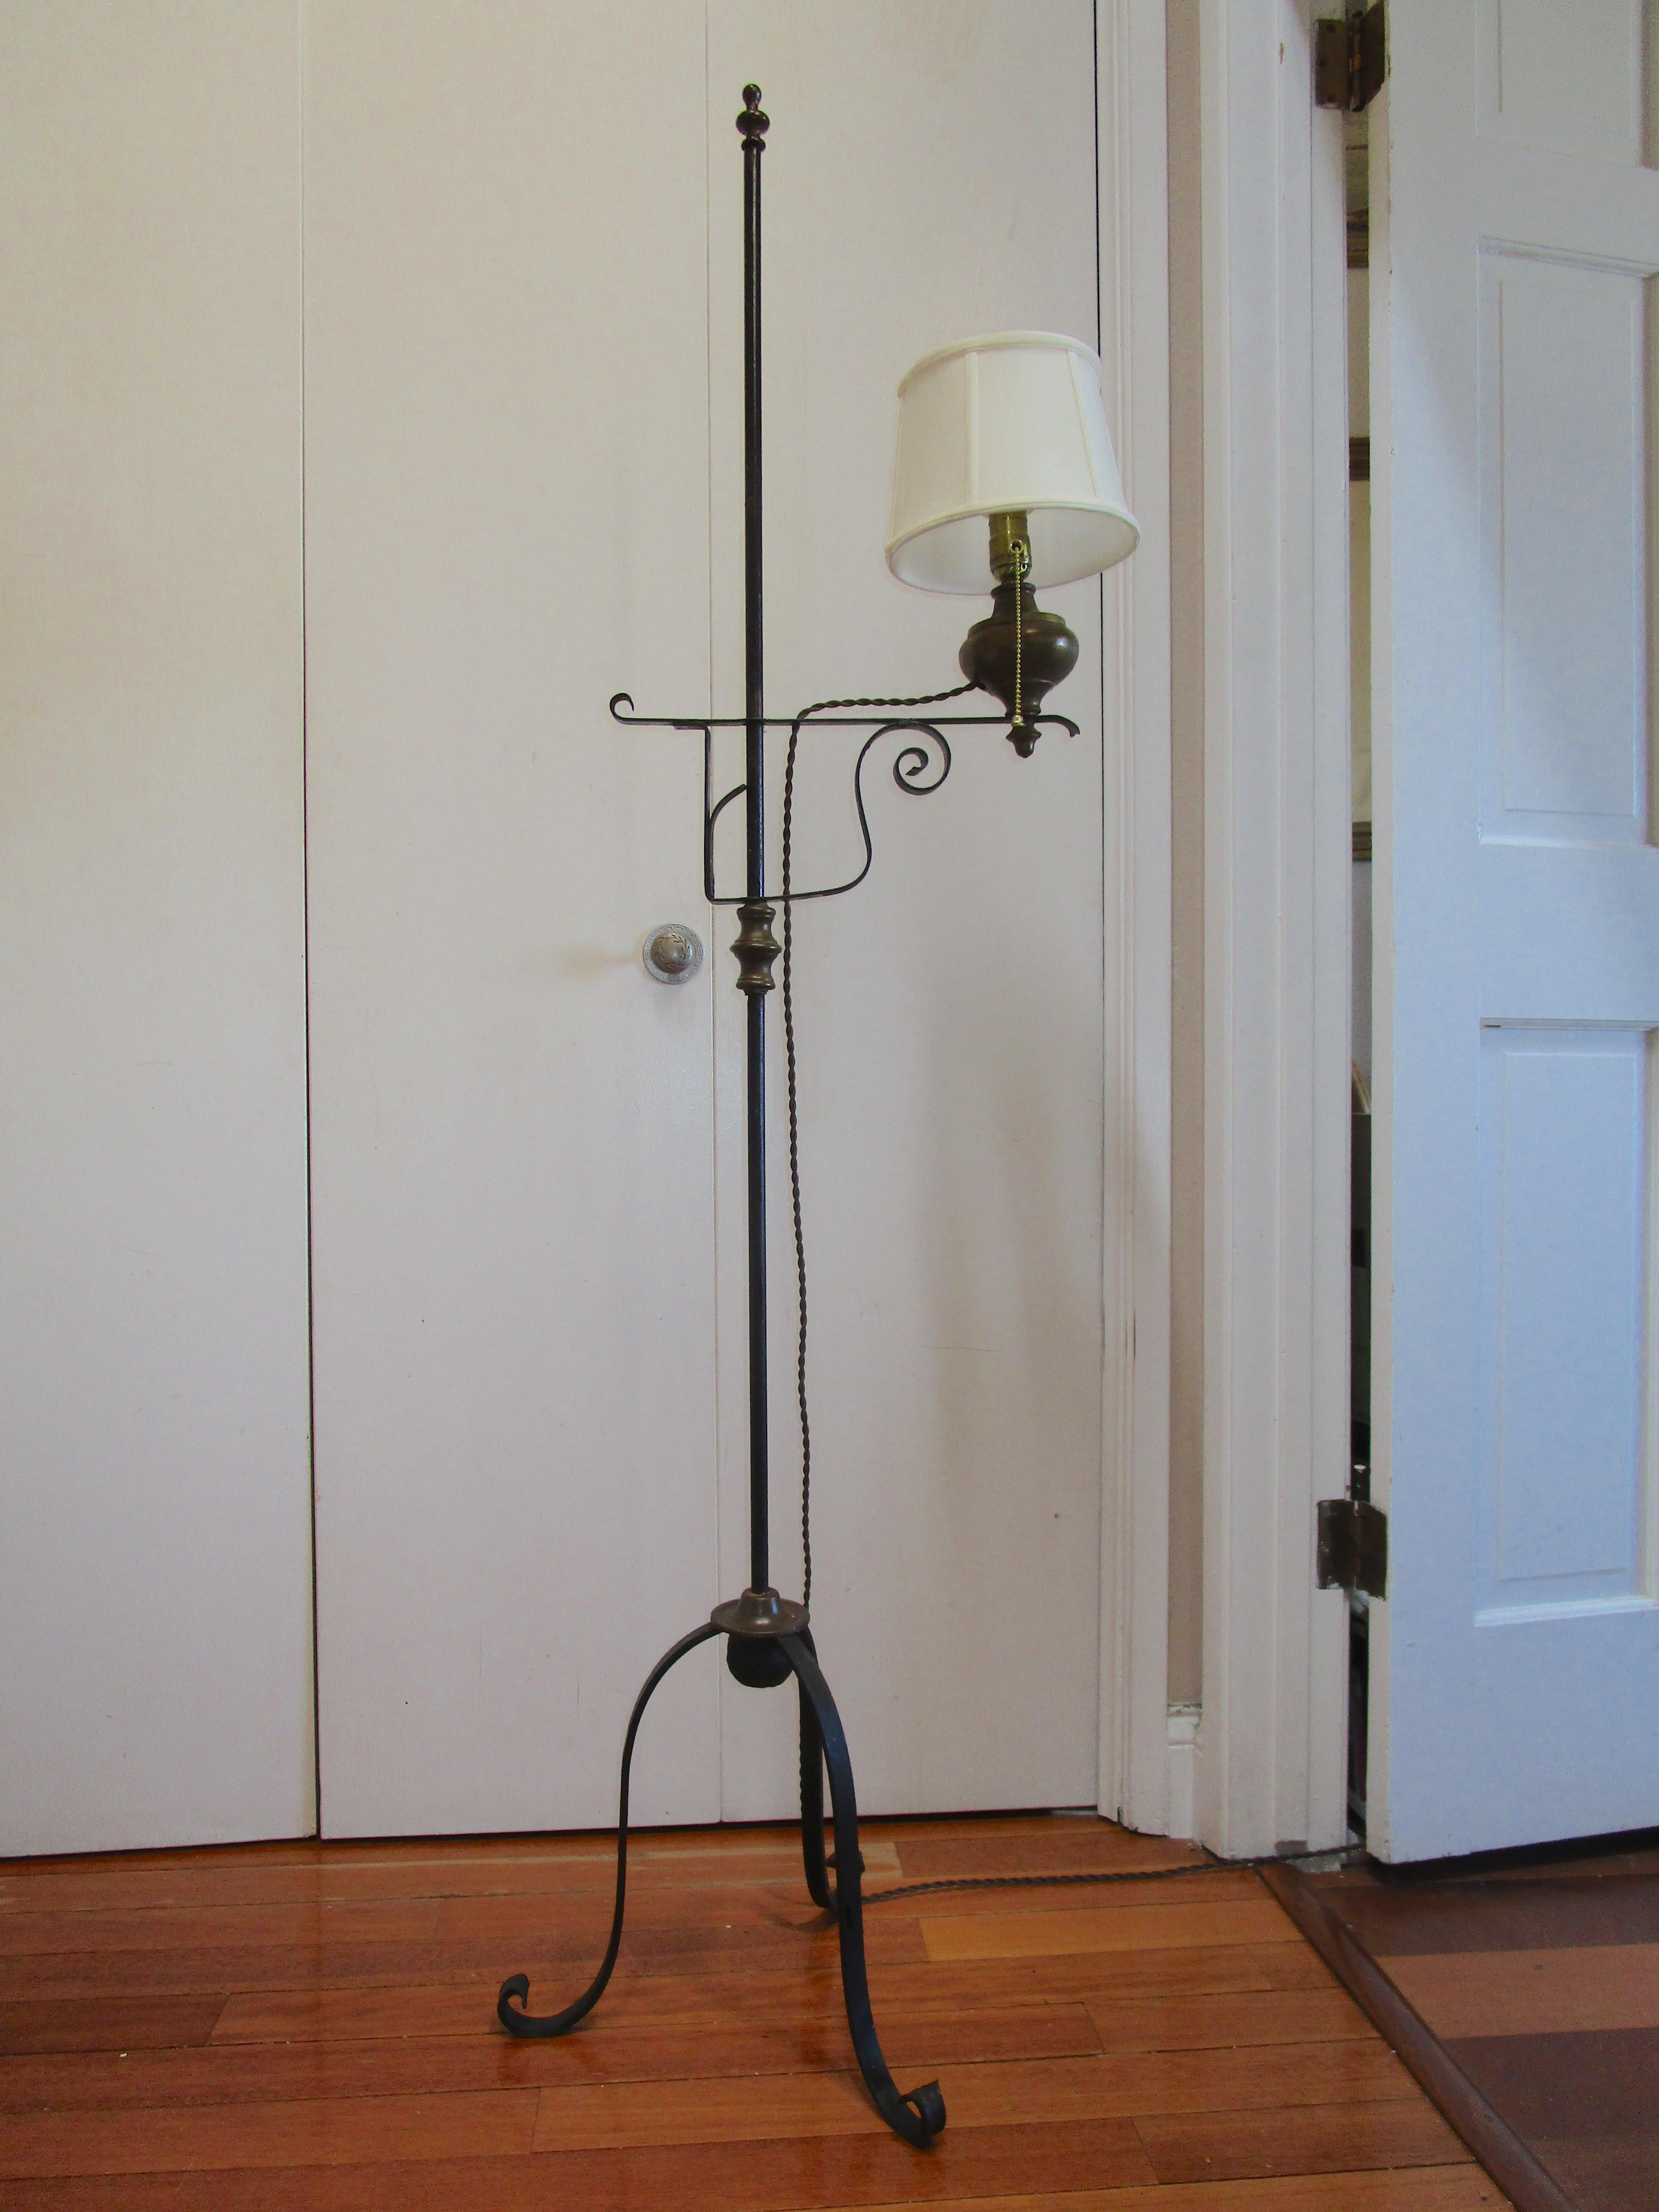 Dies ist eine auffällige schmiedeeiserne Lampe mit Dreibeinfuß. Das Ölreservoir, die Kordel im Vintage-Stil und das Dreibein, das auf verschnörkelten Füßen ruht, machen ihn zu einem echten Hingucker. Dies ist eine verstellbare Stehlampe aus